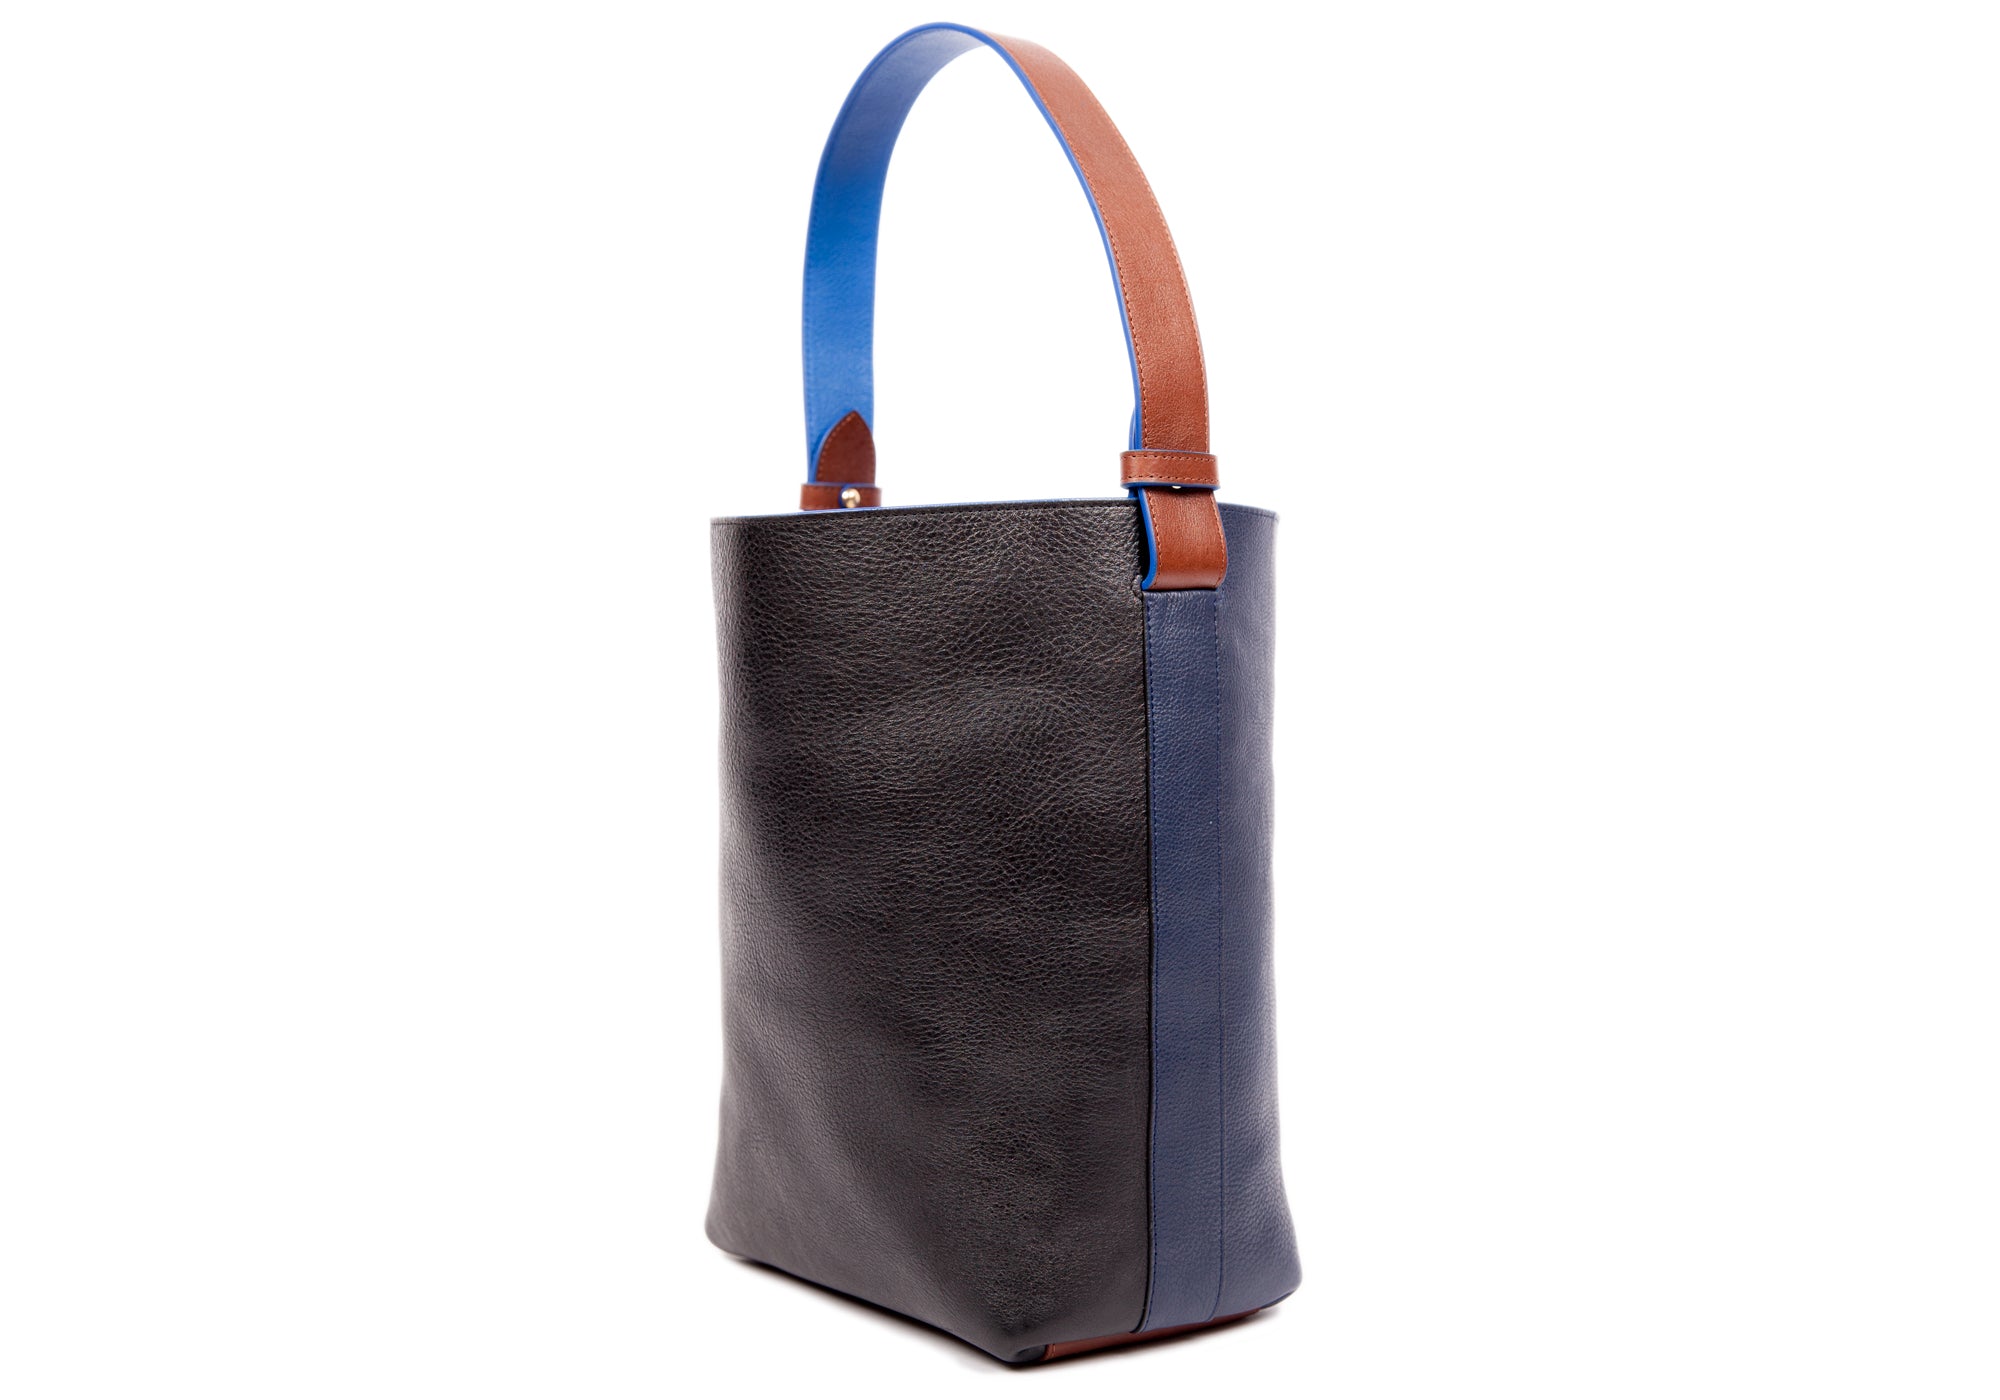 CELINE+Bucket+Shoulder+Bag+Small+Brown+Leather for sale online